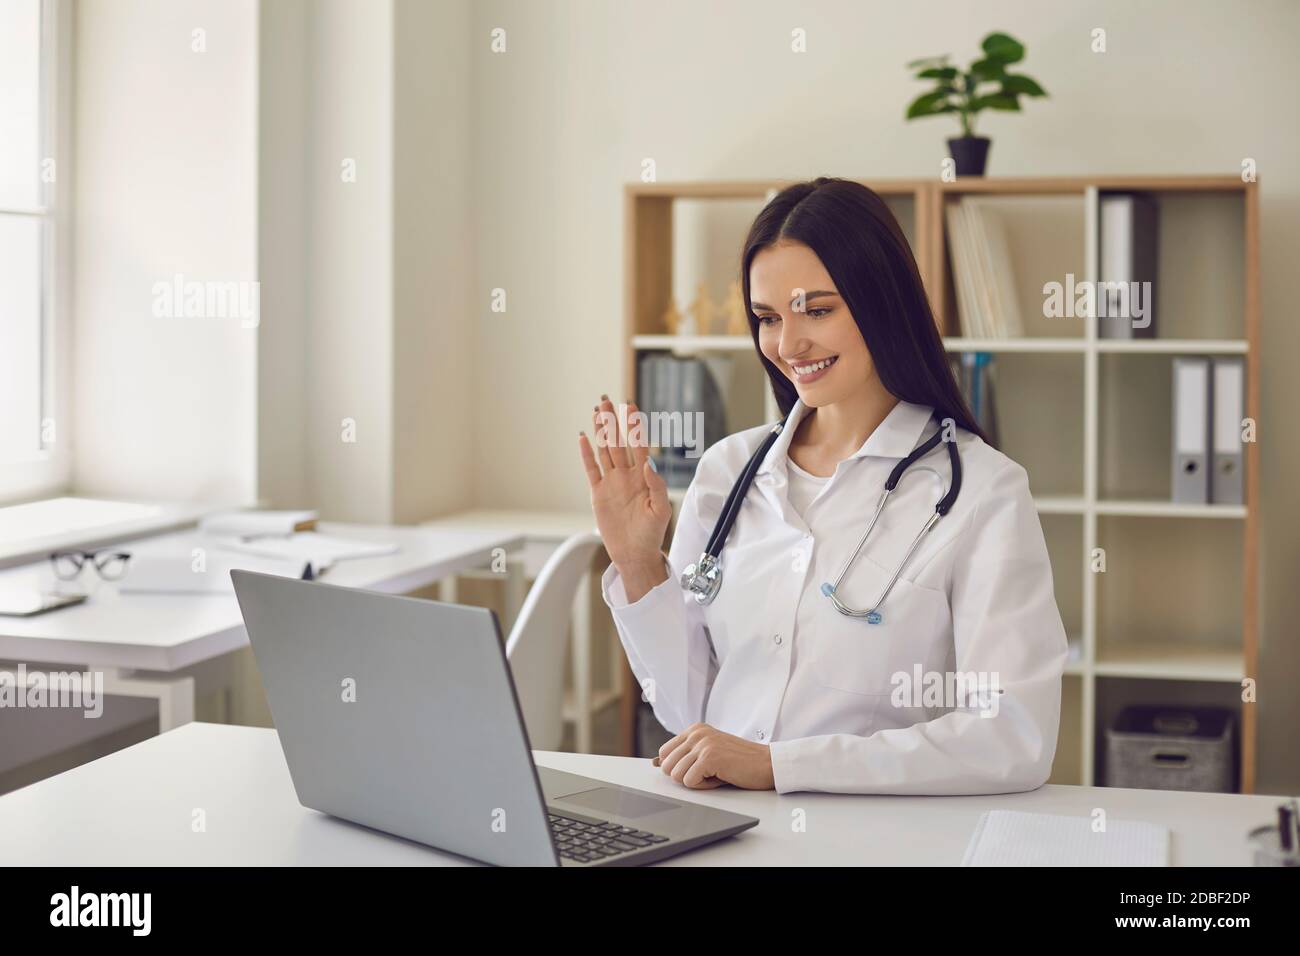 Freundlicher Arzt im Krankenhaus Büro macht Videoanruf und winkt Hand auf Laptop-Bildschirm Stockfoto